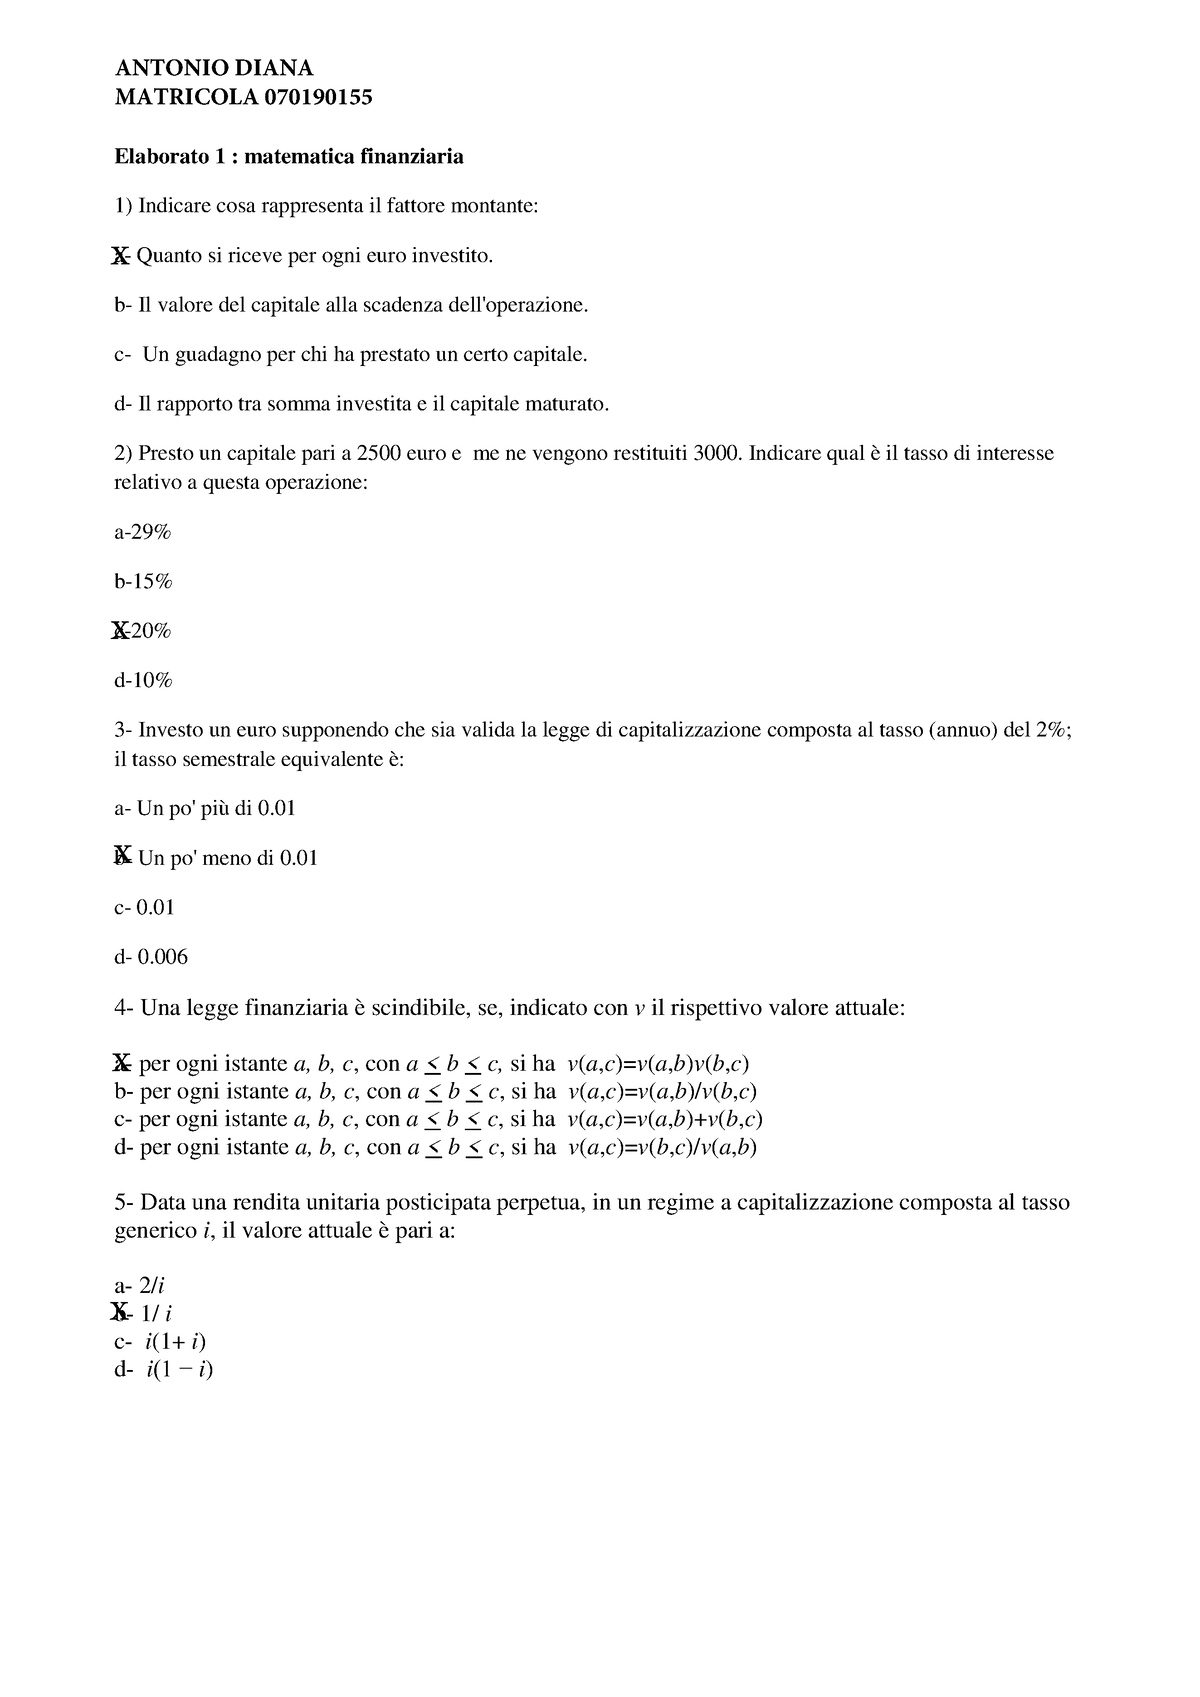 Elaborato 1 Matematica Finanziaria - Studocu